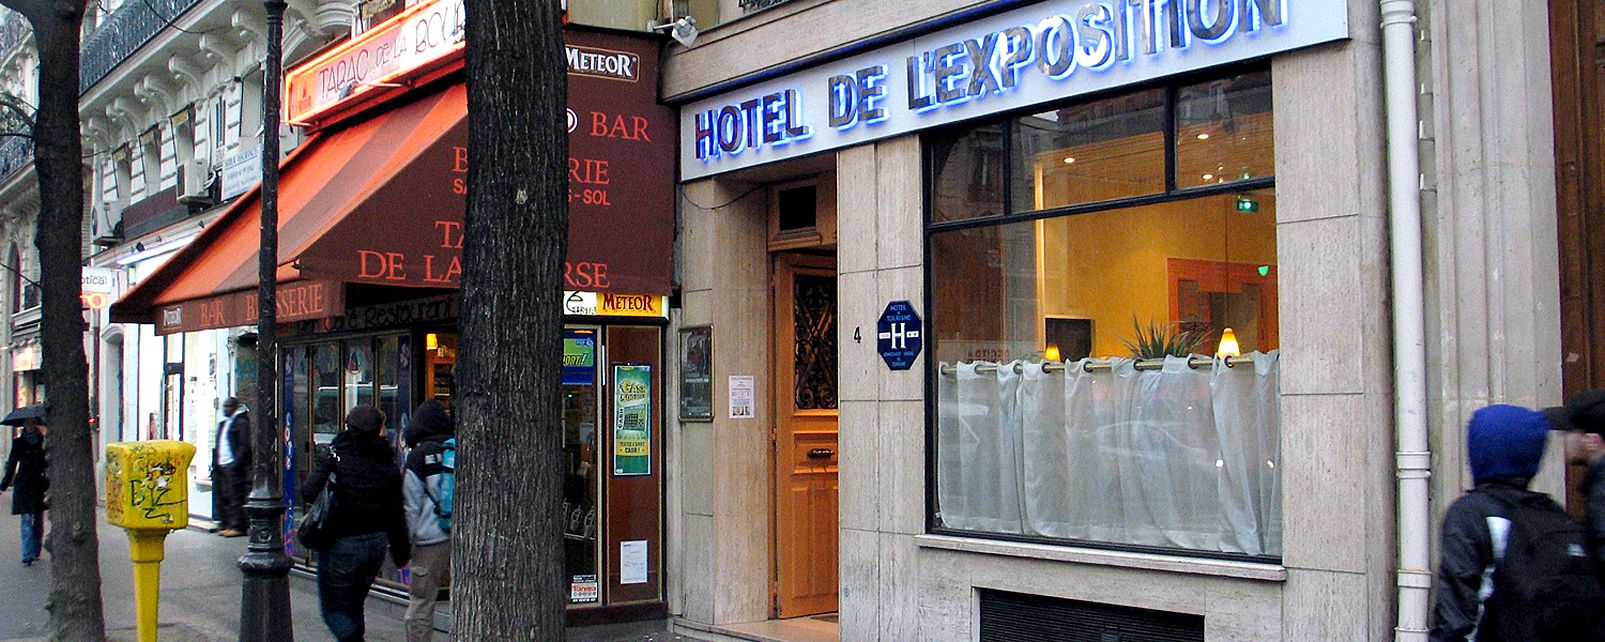 Hotel Exposition Hotel Paris